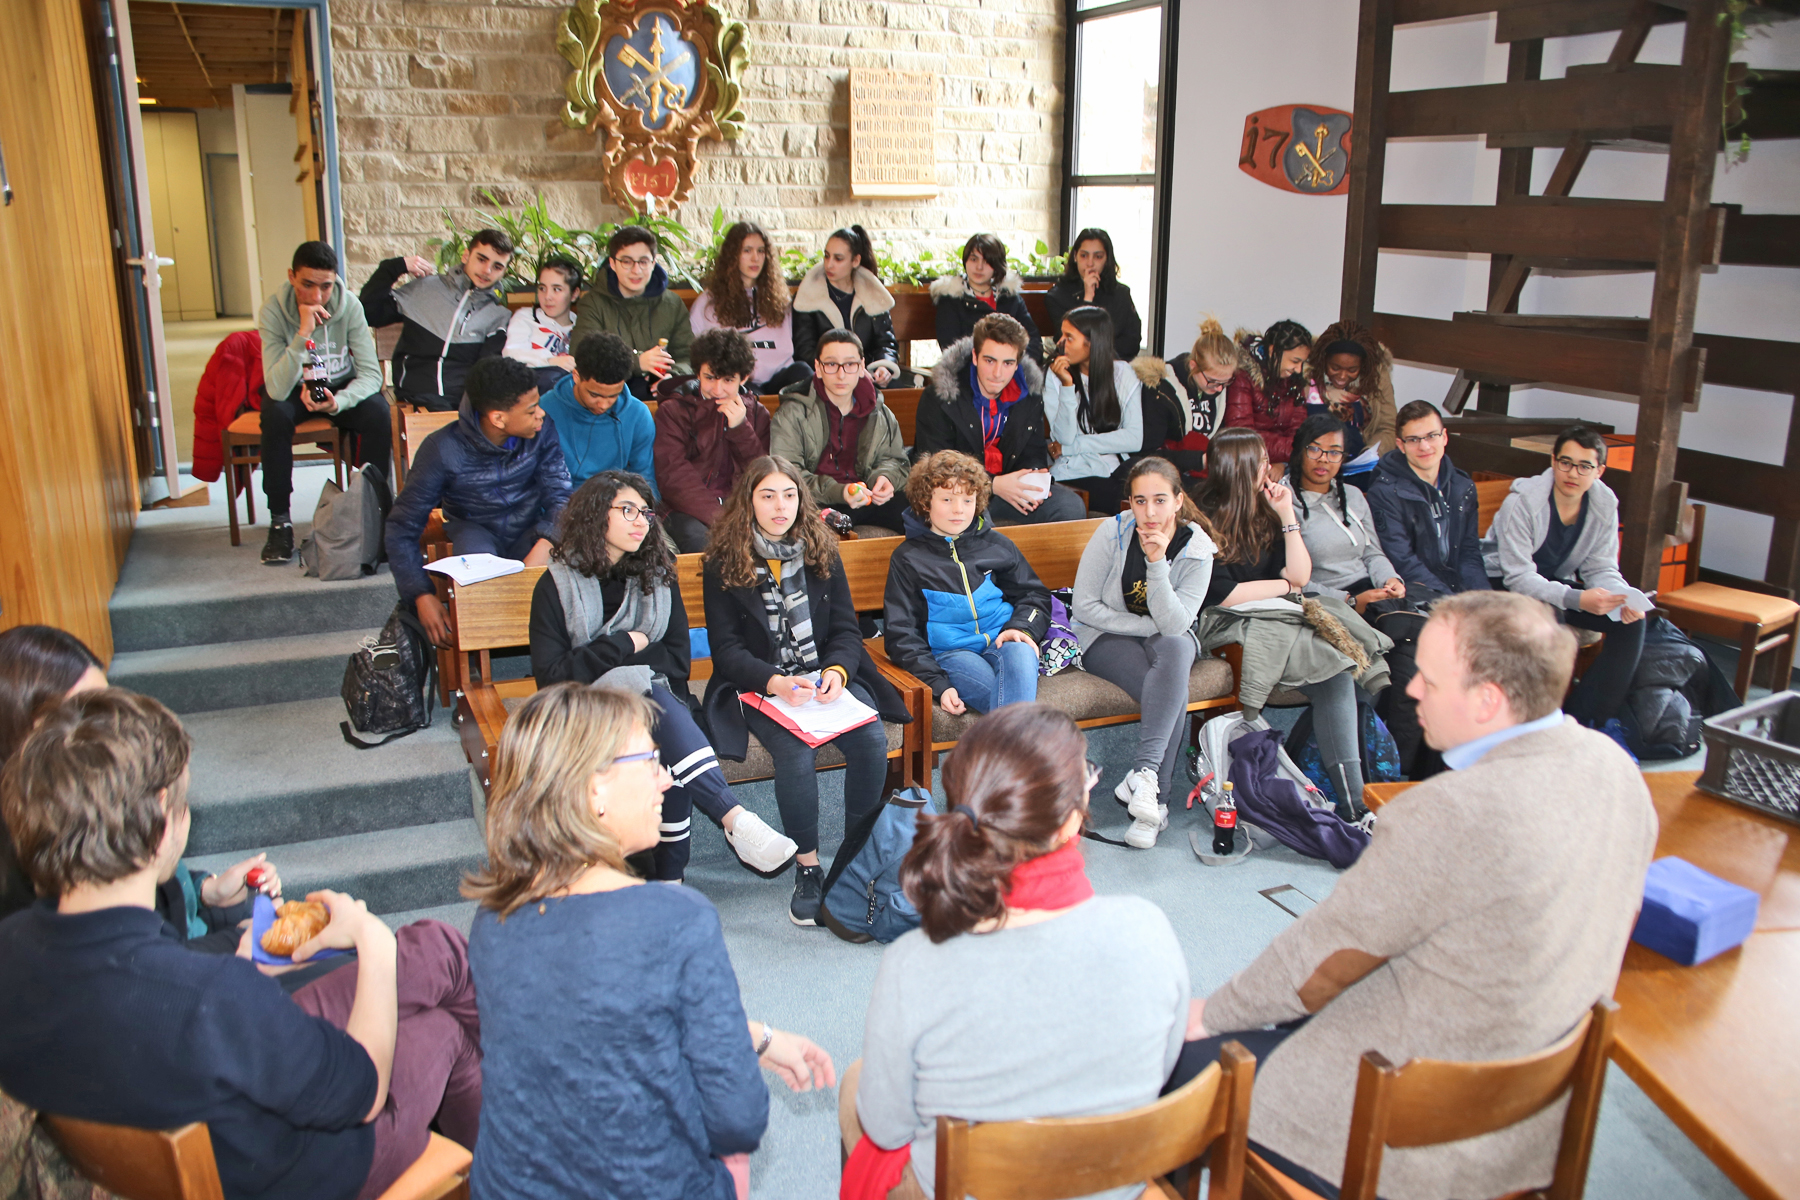  Mit Bürgermeister Felix Geider tauschten sich die französischen Schülerinnen und Schüler über die unterschiedlichsten Themen aus 